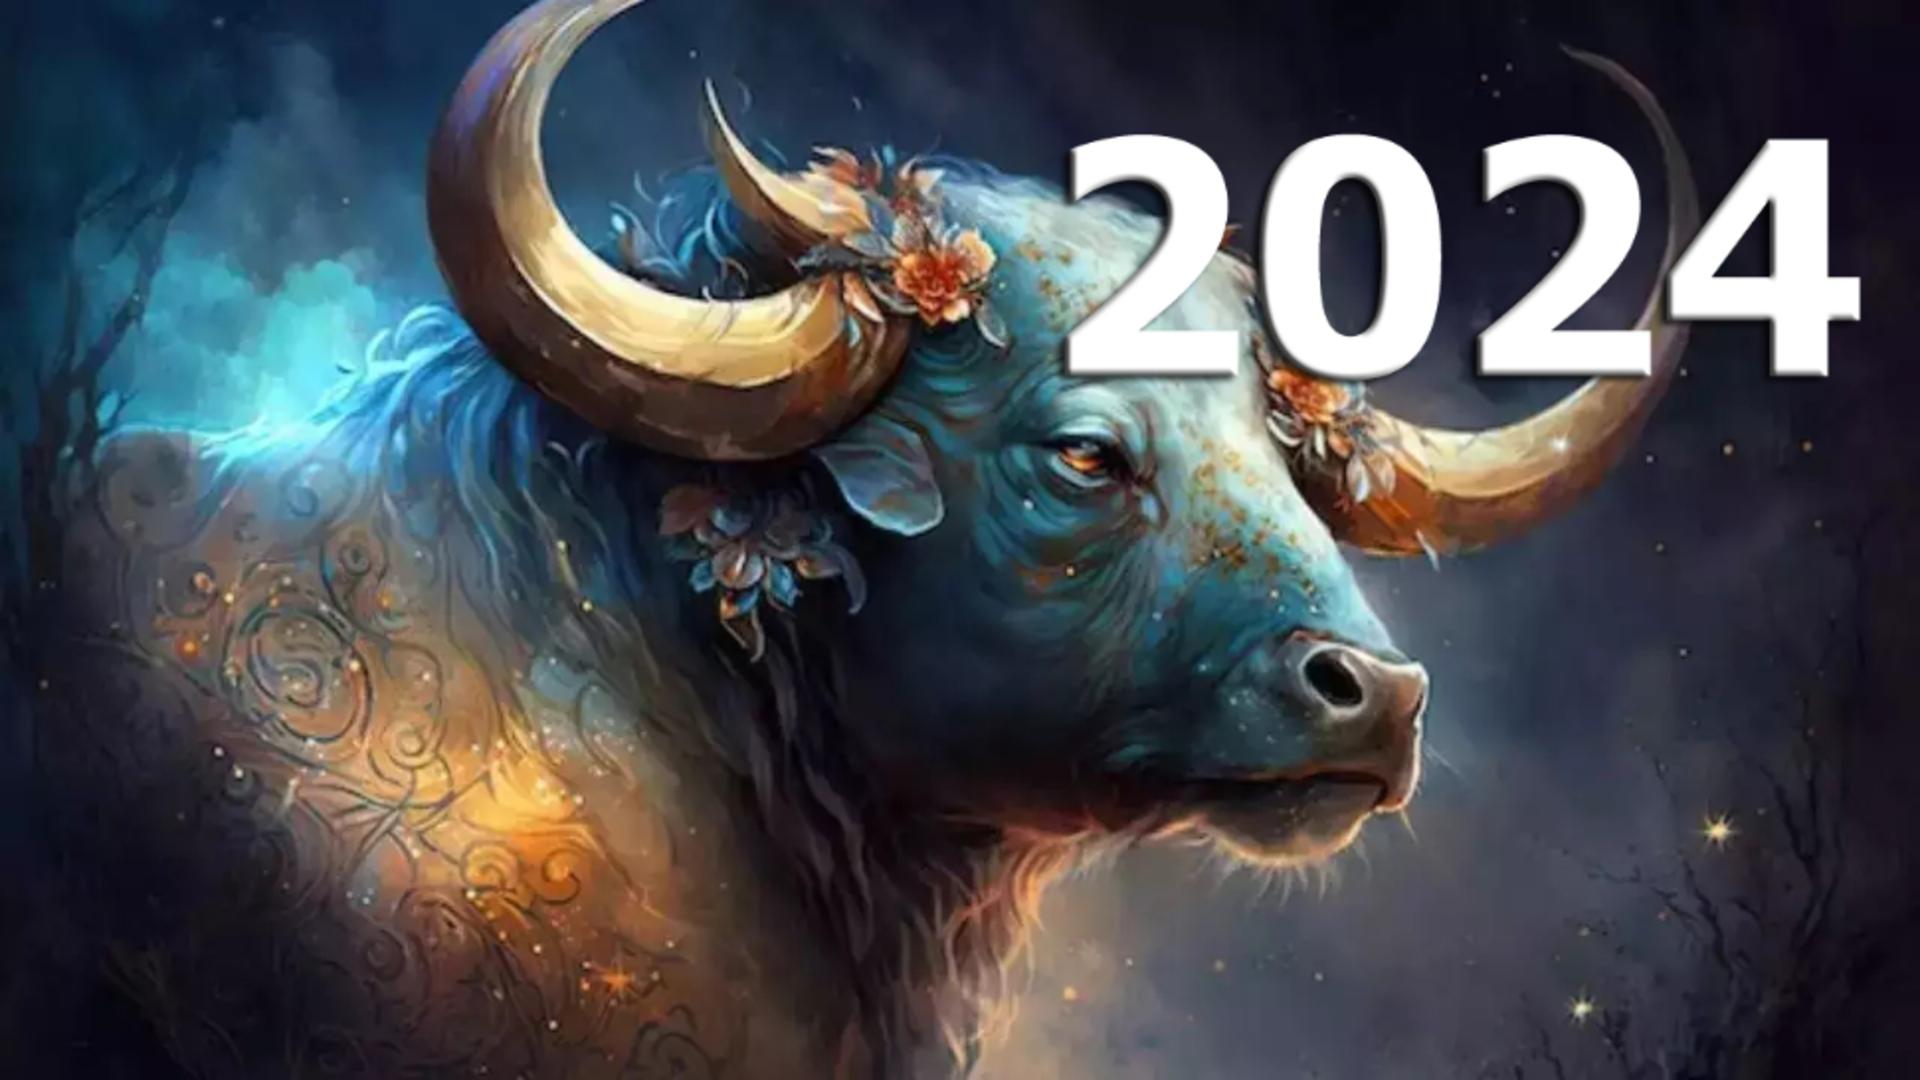 Horoscopul anului 2024 – Taur. Provocare fără precedent: Ai grijă de propriile dorințe și nevoi!